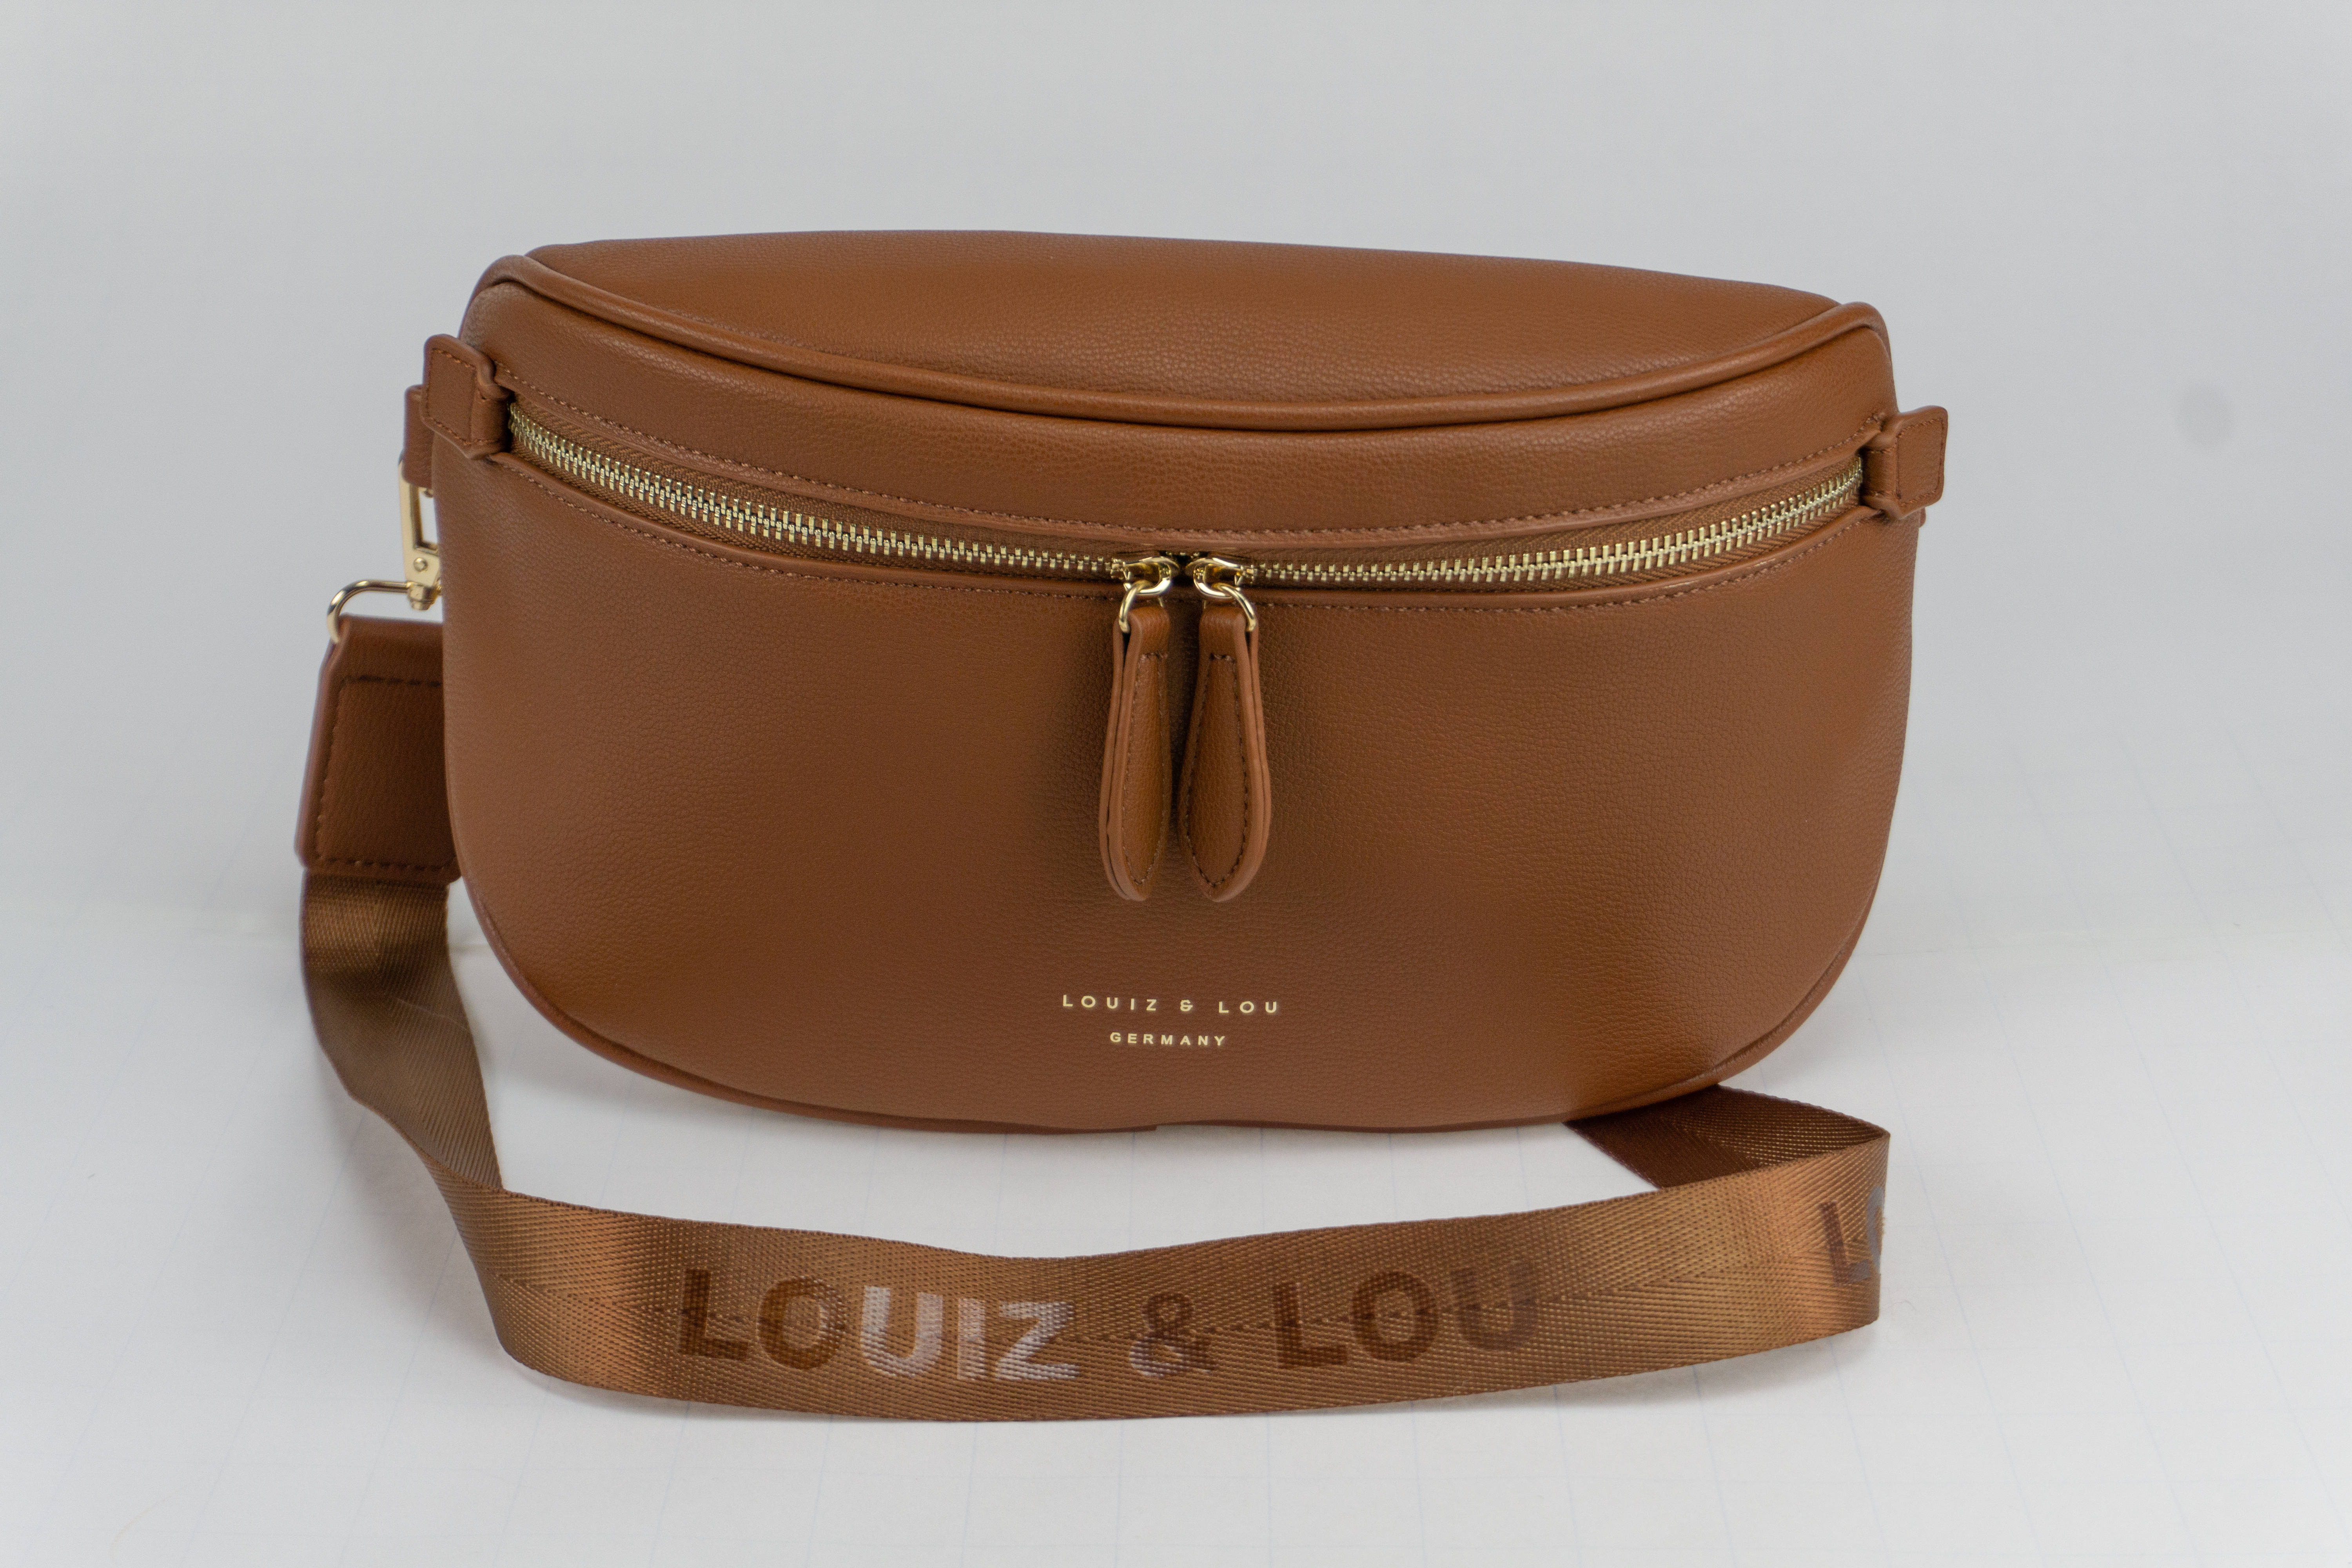 Gürteltasche Bodybag L-size von Louiz&Lou Kollektion Hommage in cognac